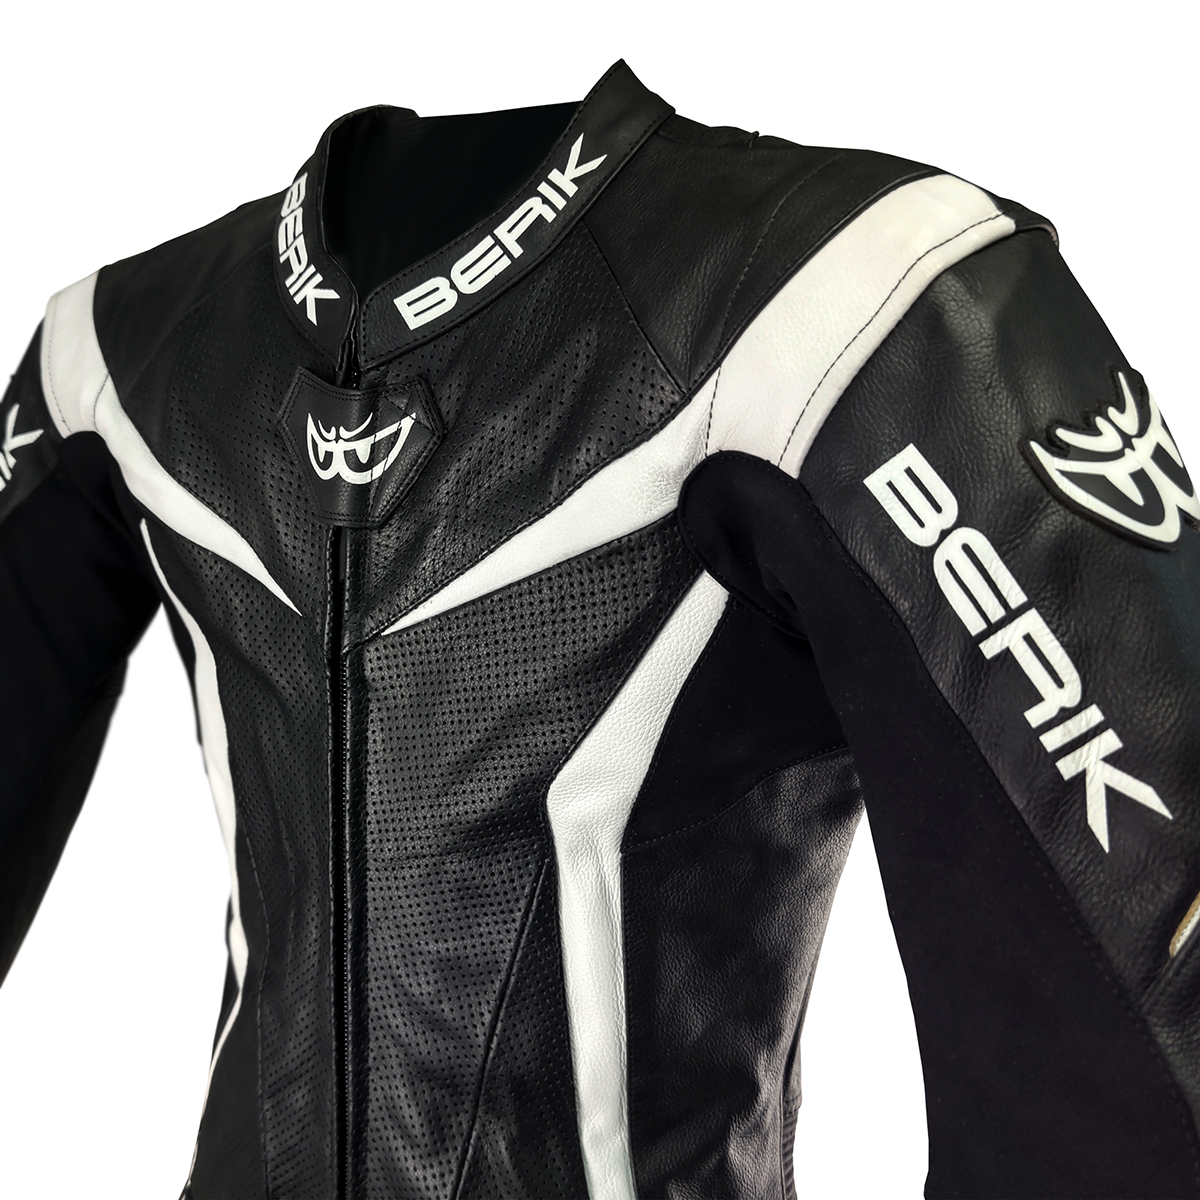 MFJ公認モデル BERIK ベリック レーシングスーツ LS1-10417 BLACK/WHITE 50サイズ Lサイズ相当 サーキット ツーリング 【バイク用品】_画像6